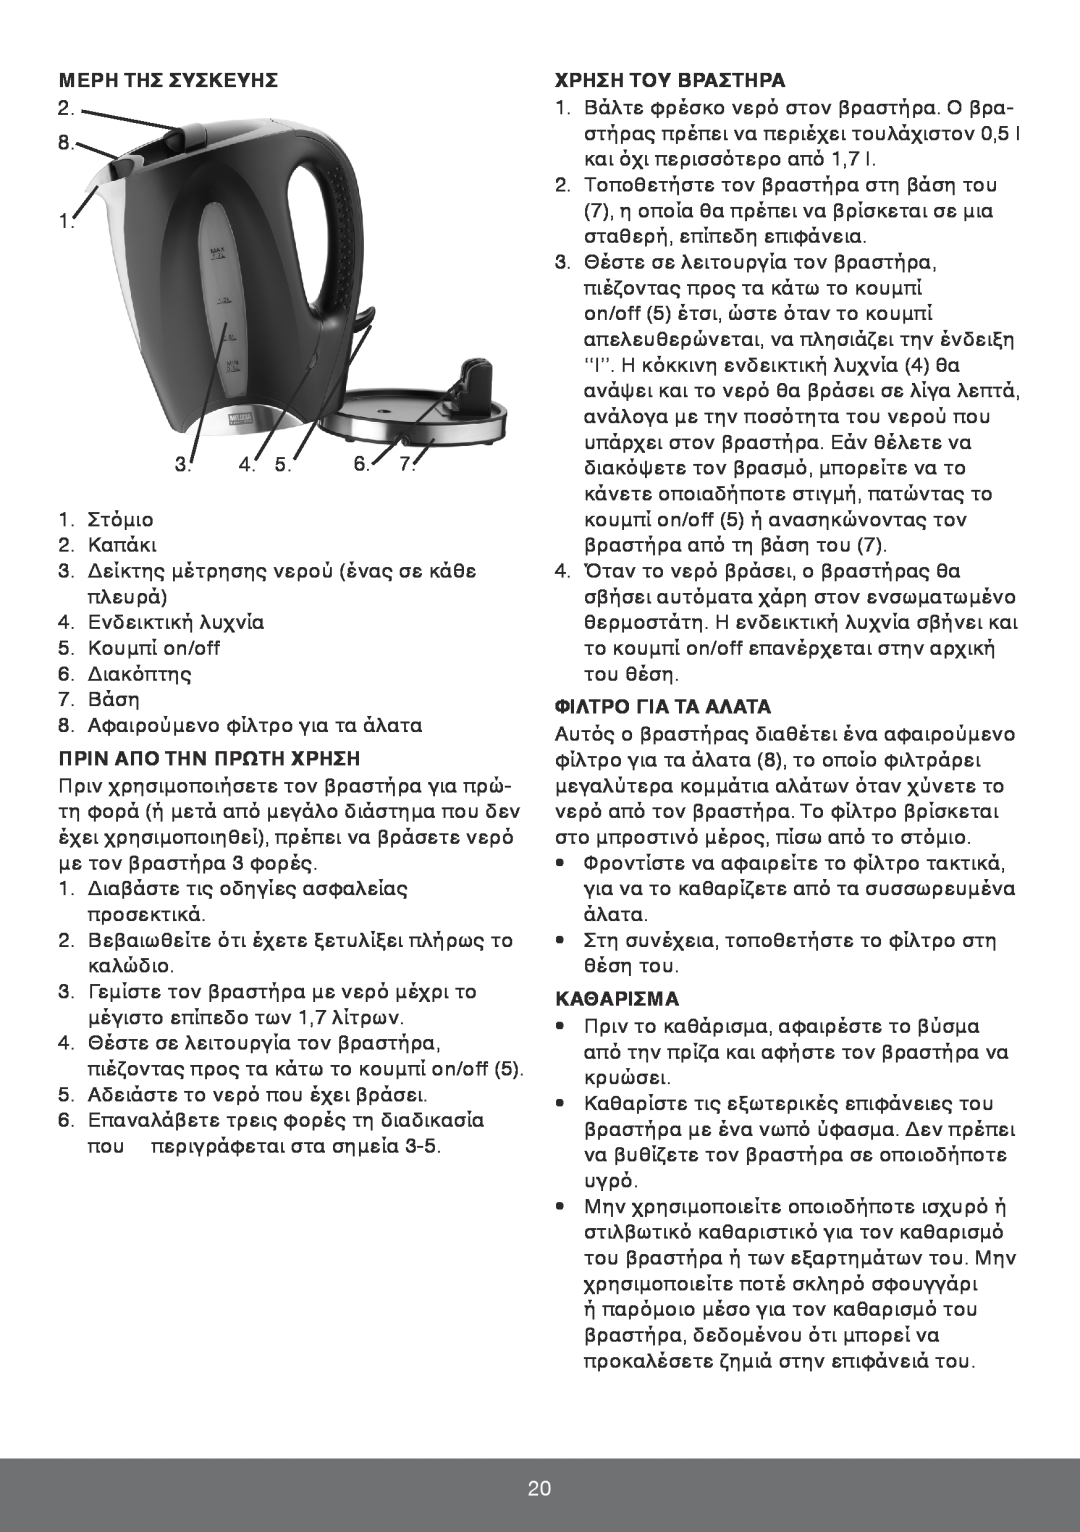 Melissa 645-096 manual Μερη Τησ Συσκευησ, Πριν Απο Την Πρωτη Χρηση, Χρηση Του Βραστηρα, Φιλτρο Για Τα Αλατα, Καθαρισμα 